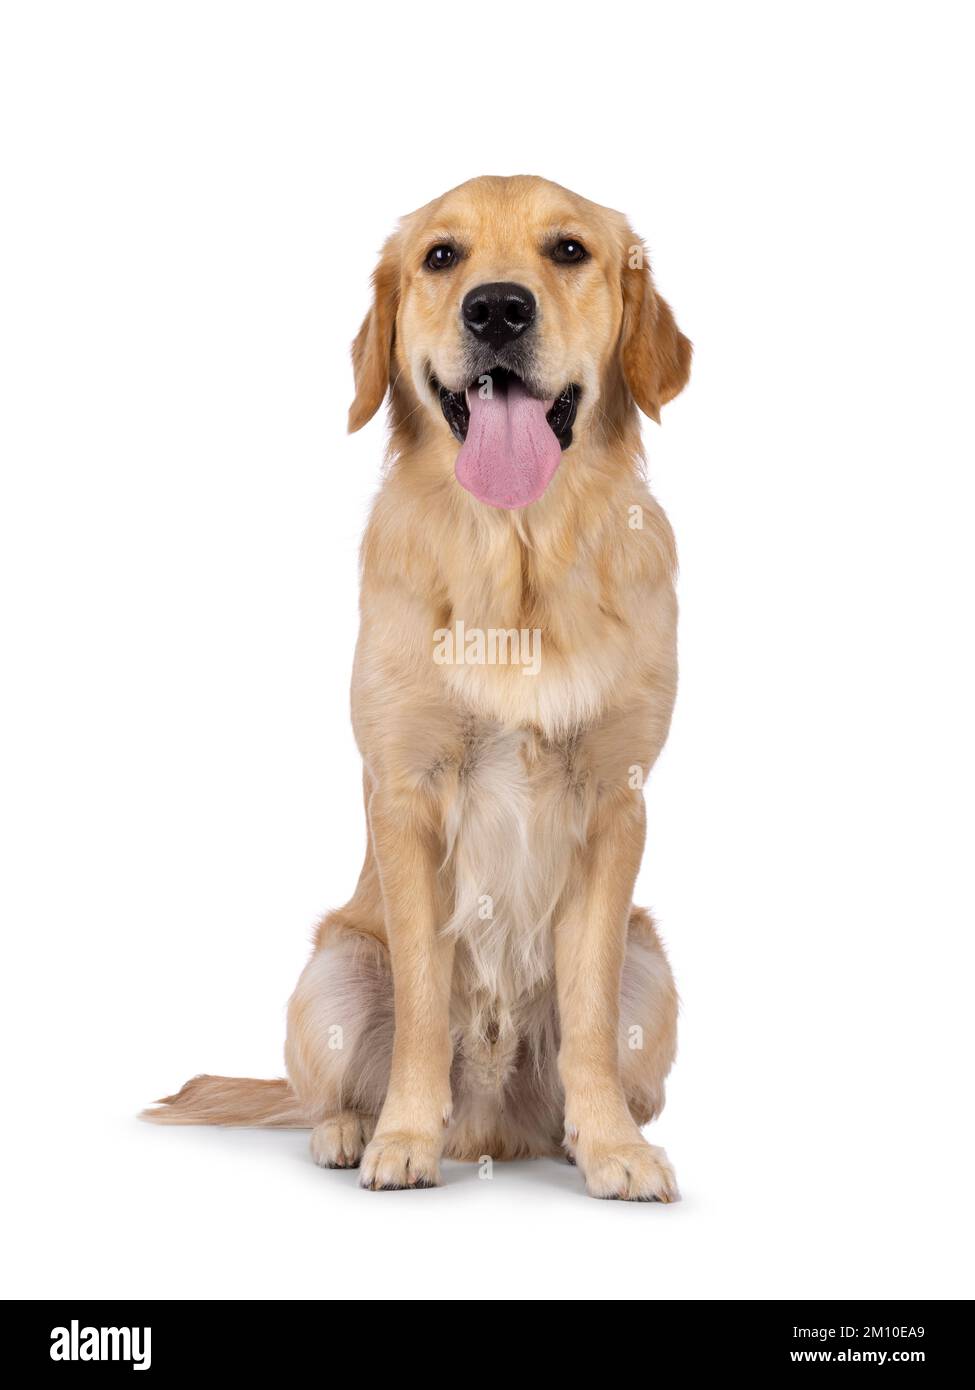 Jeune chien adulte Golden Retriever, assis face à l'avant avec une longue langue vers l'extérieur. En regardant vers l'appareil photo. Isolé sur un fond blanc. Banque D'Images